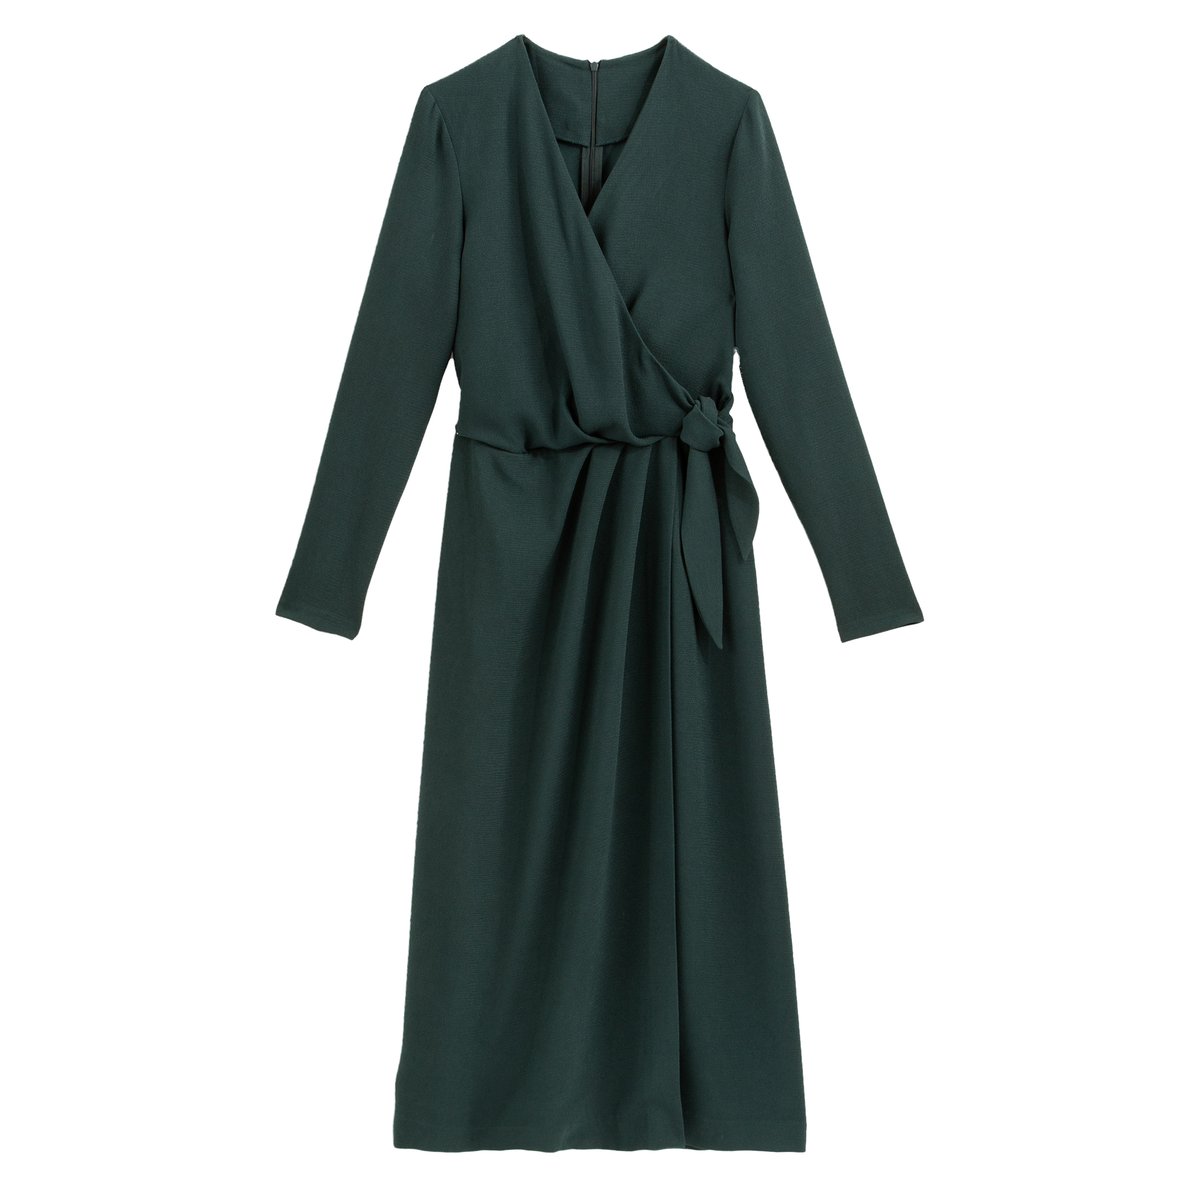 Платье La Redoute С эффектом с запахом длинные рукава 38 (FR) - 44 (RUS) зеленый, размер 38 (FR) - 44 (RUS) С эффектом с запахом длинные рукава 38 (FR) - 44 (RUS) зеленый - фото 1